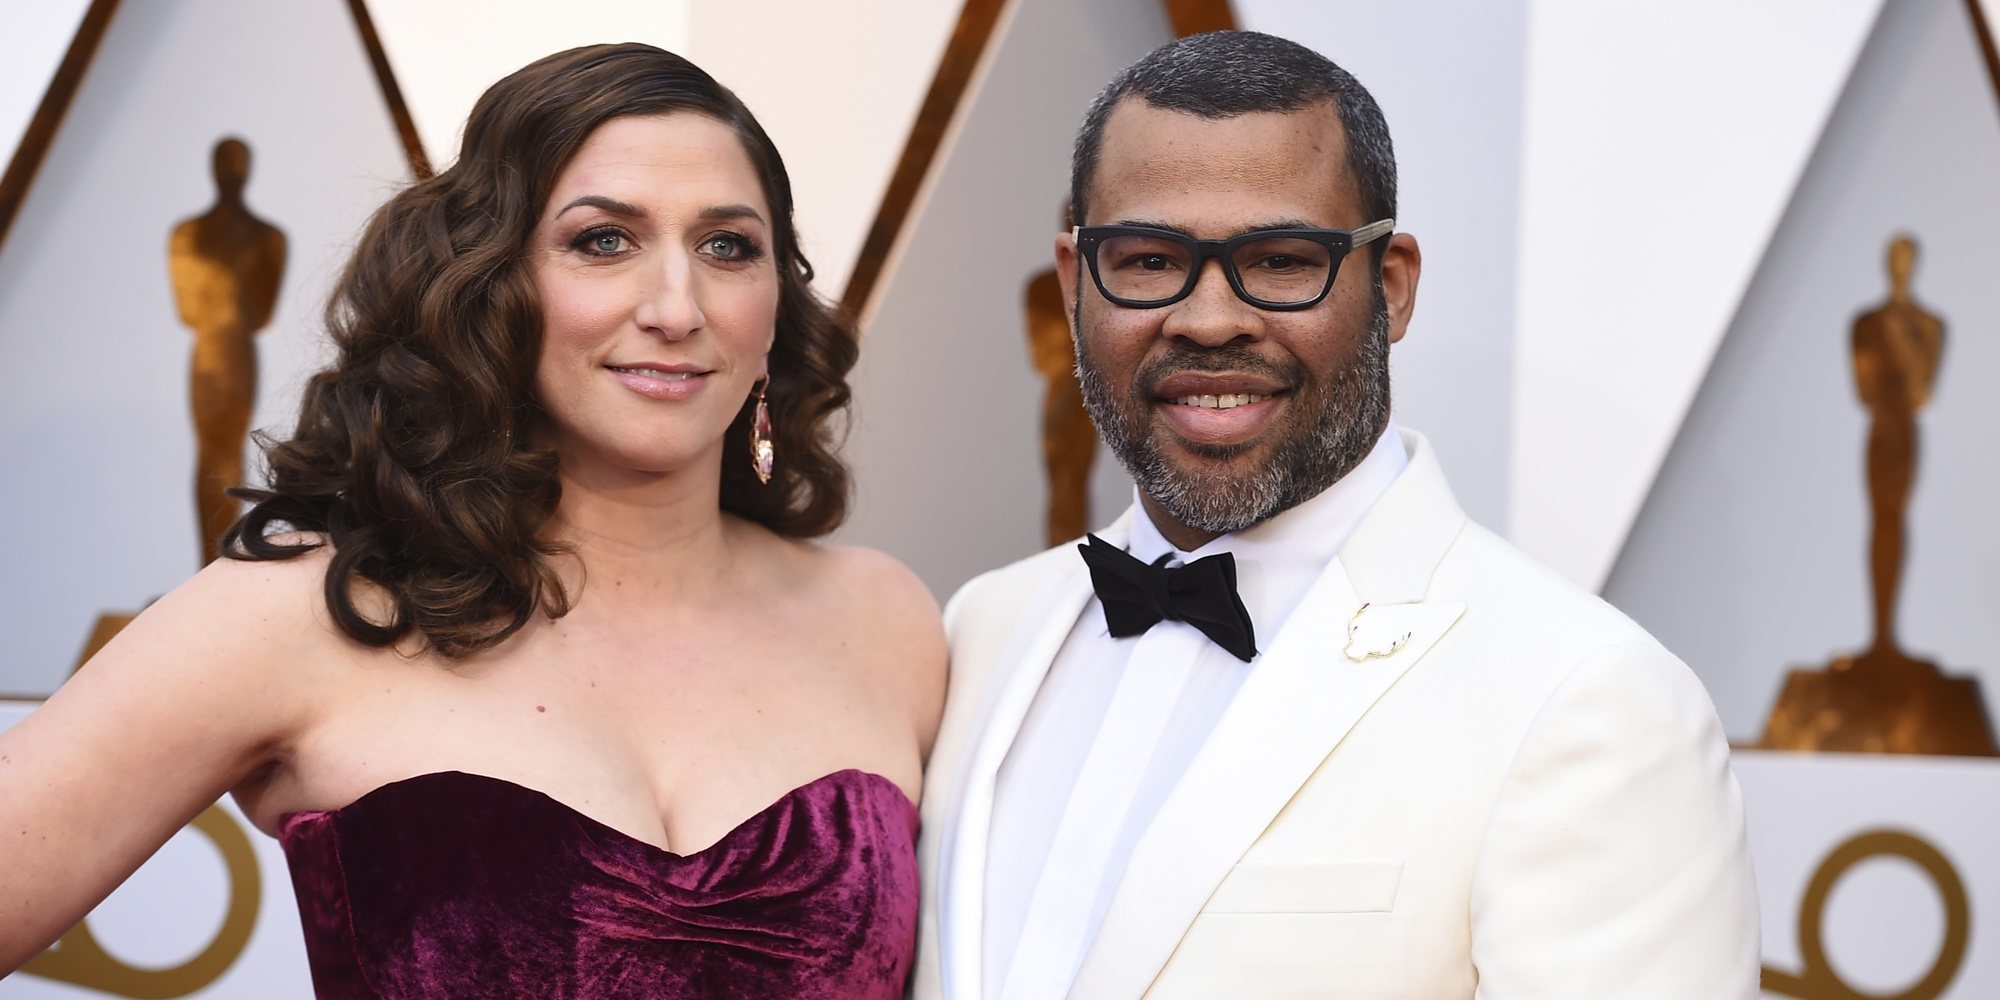 Jorge Javier Vázquez y Paz Padilla 'aparecen por sorpresa' en los Oscar 2018
gracias a Jordan Pelee y Chelsea Peretti